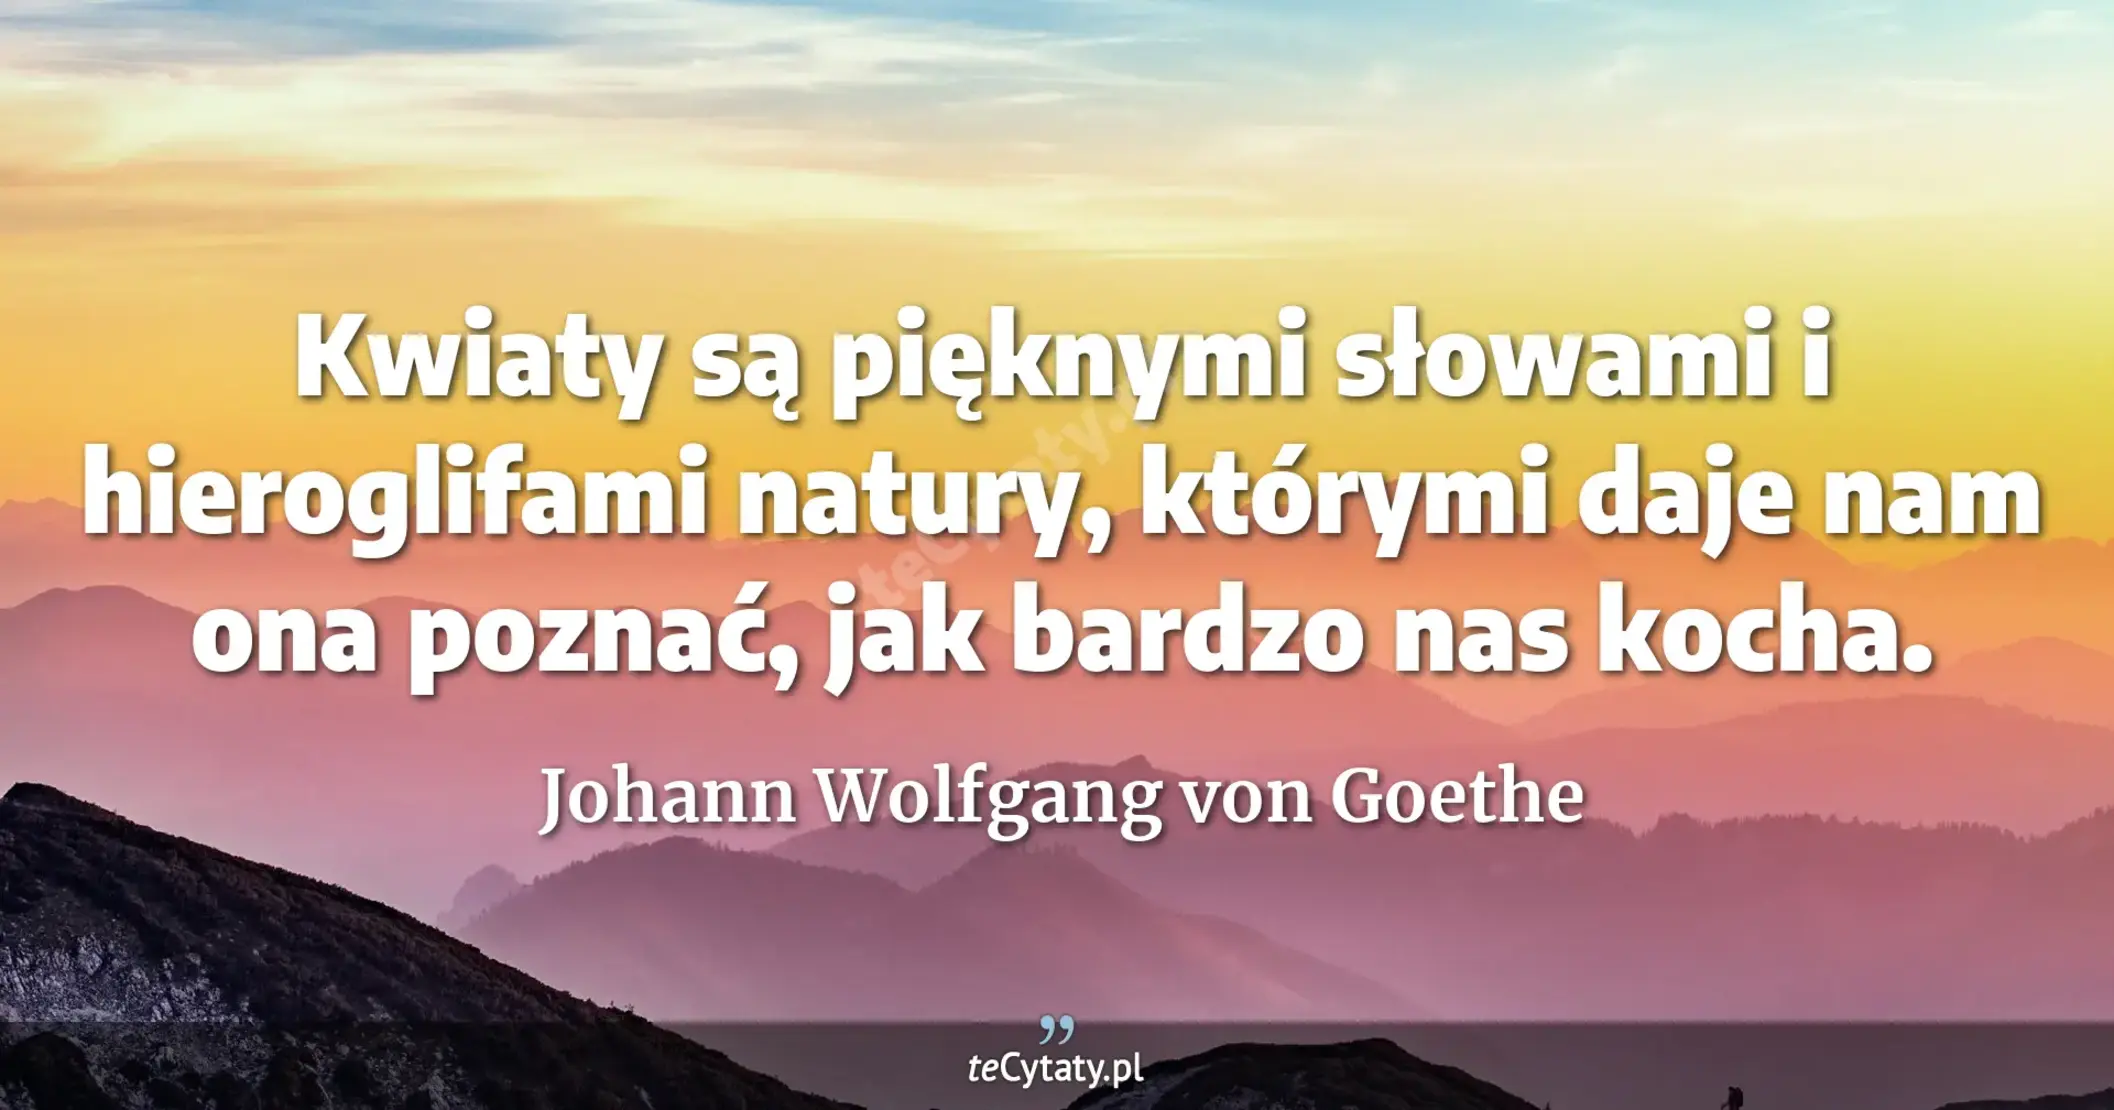 Kwiaty są pięknymi słowami i hieroglifami natury, którymi daje nam ona poznać, jak bardzo nas kocha. - Johann Wolfgang von Goethe